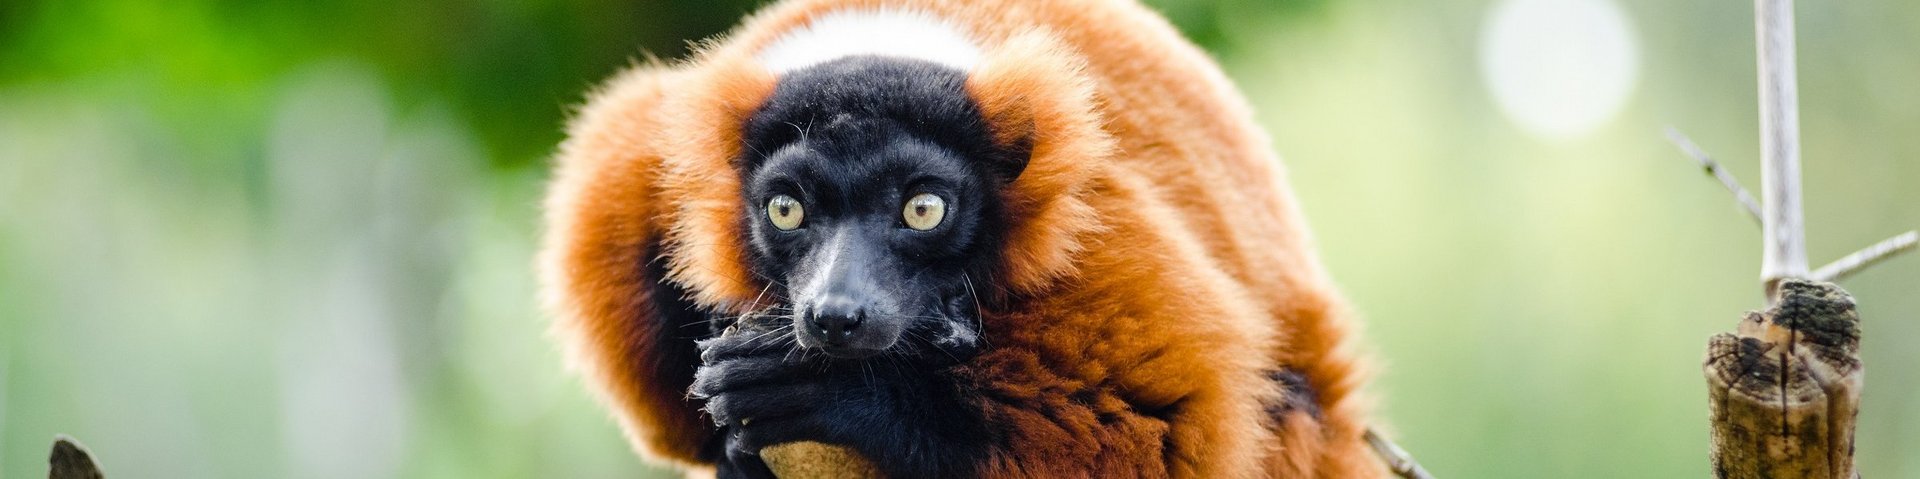 Roter Vari, ein Lemur